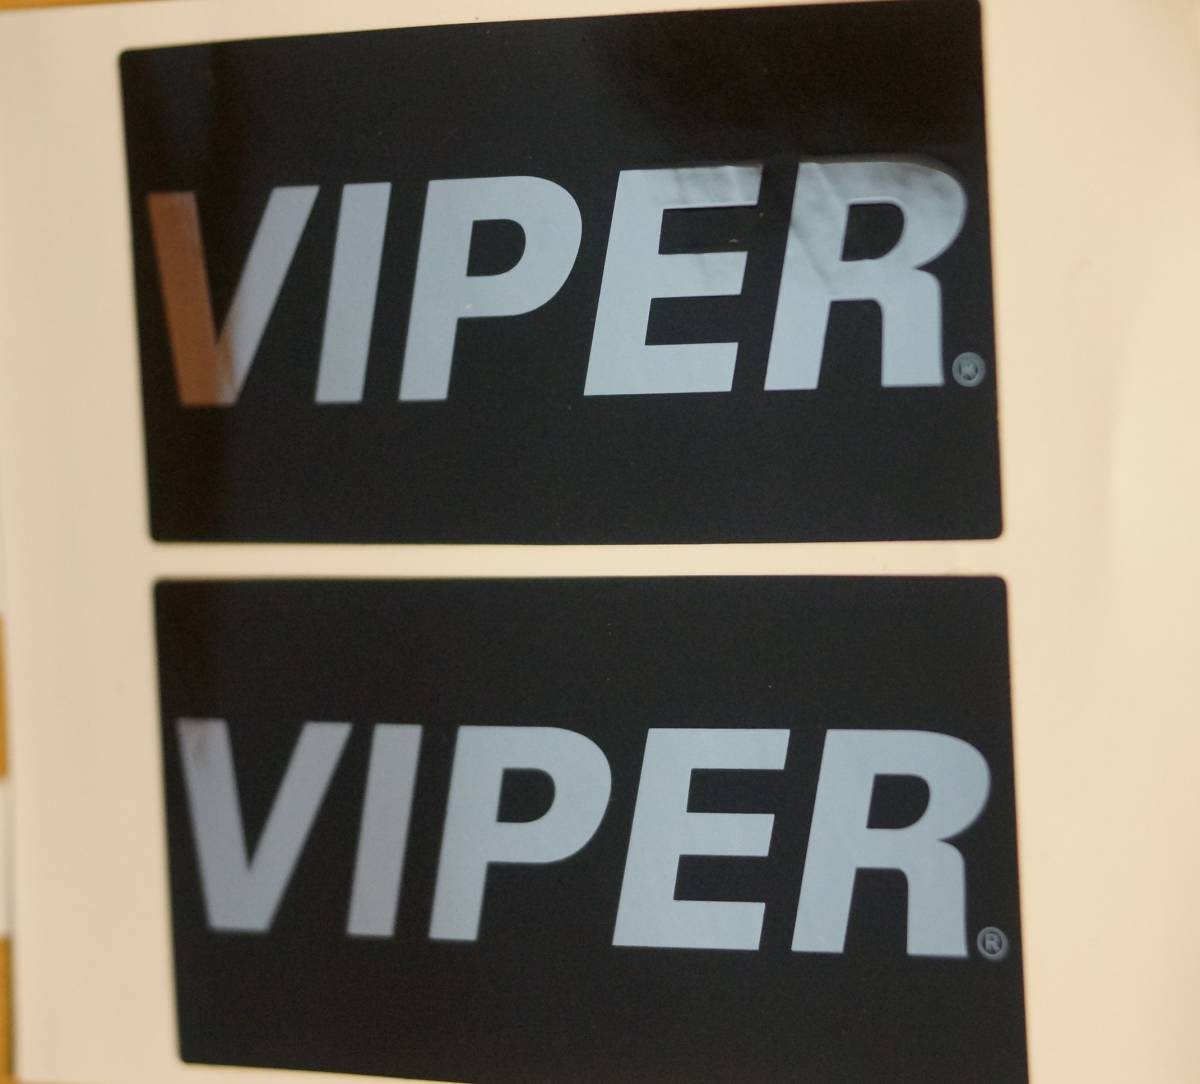 VIPER машина охранная сигнализация бренд стеклоочиститель приложен стикер 2 листов 1 комплект внутри приклеивание / вне приклеивание . для нового товара не использовался хранение товар 